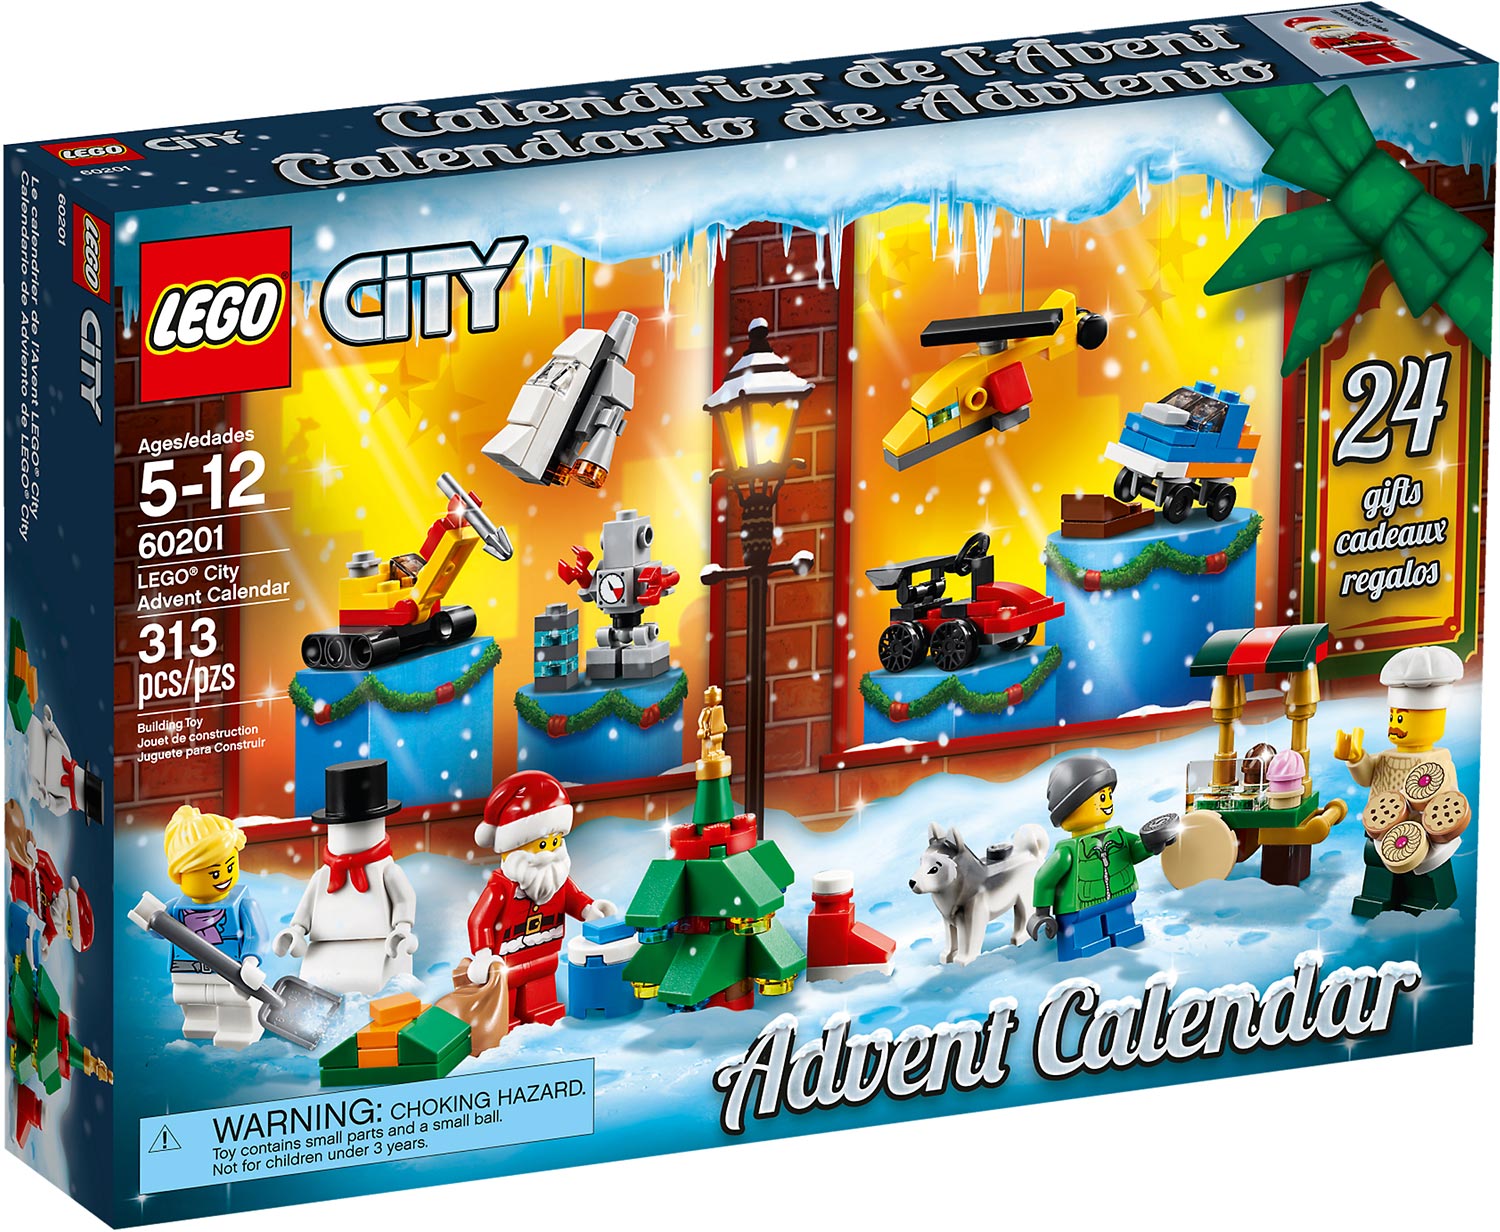 LEGO City Advent Calendar 2018